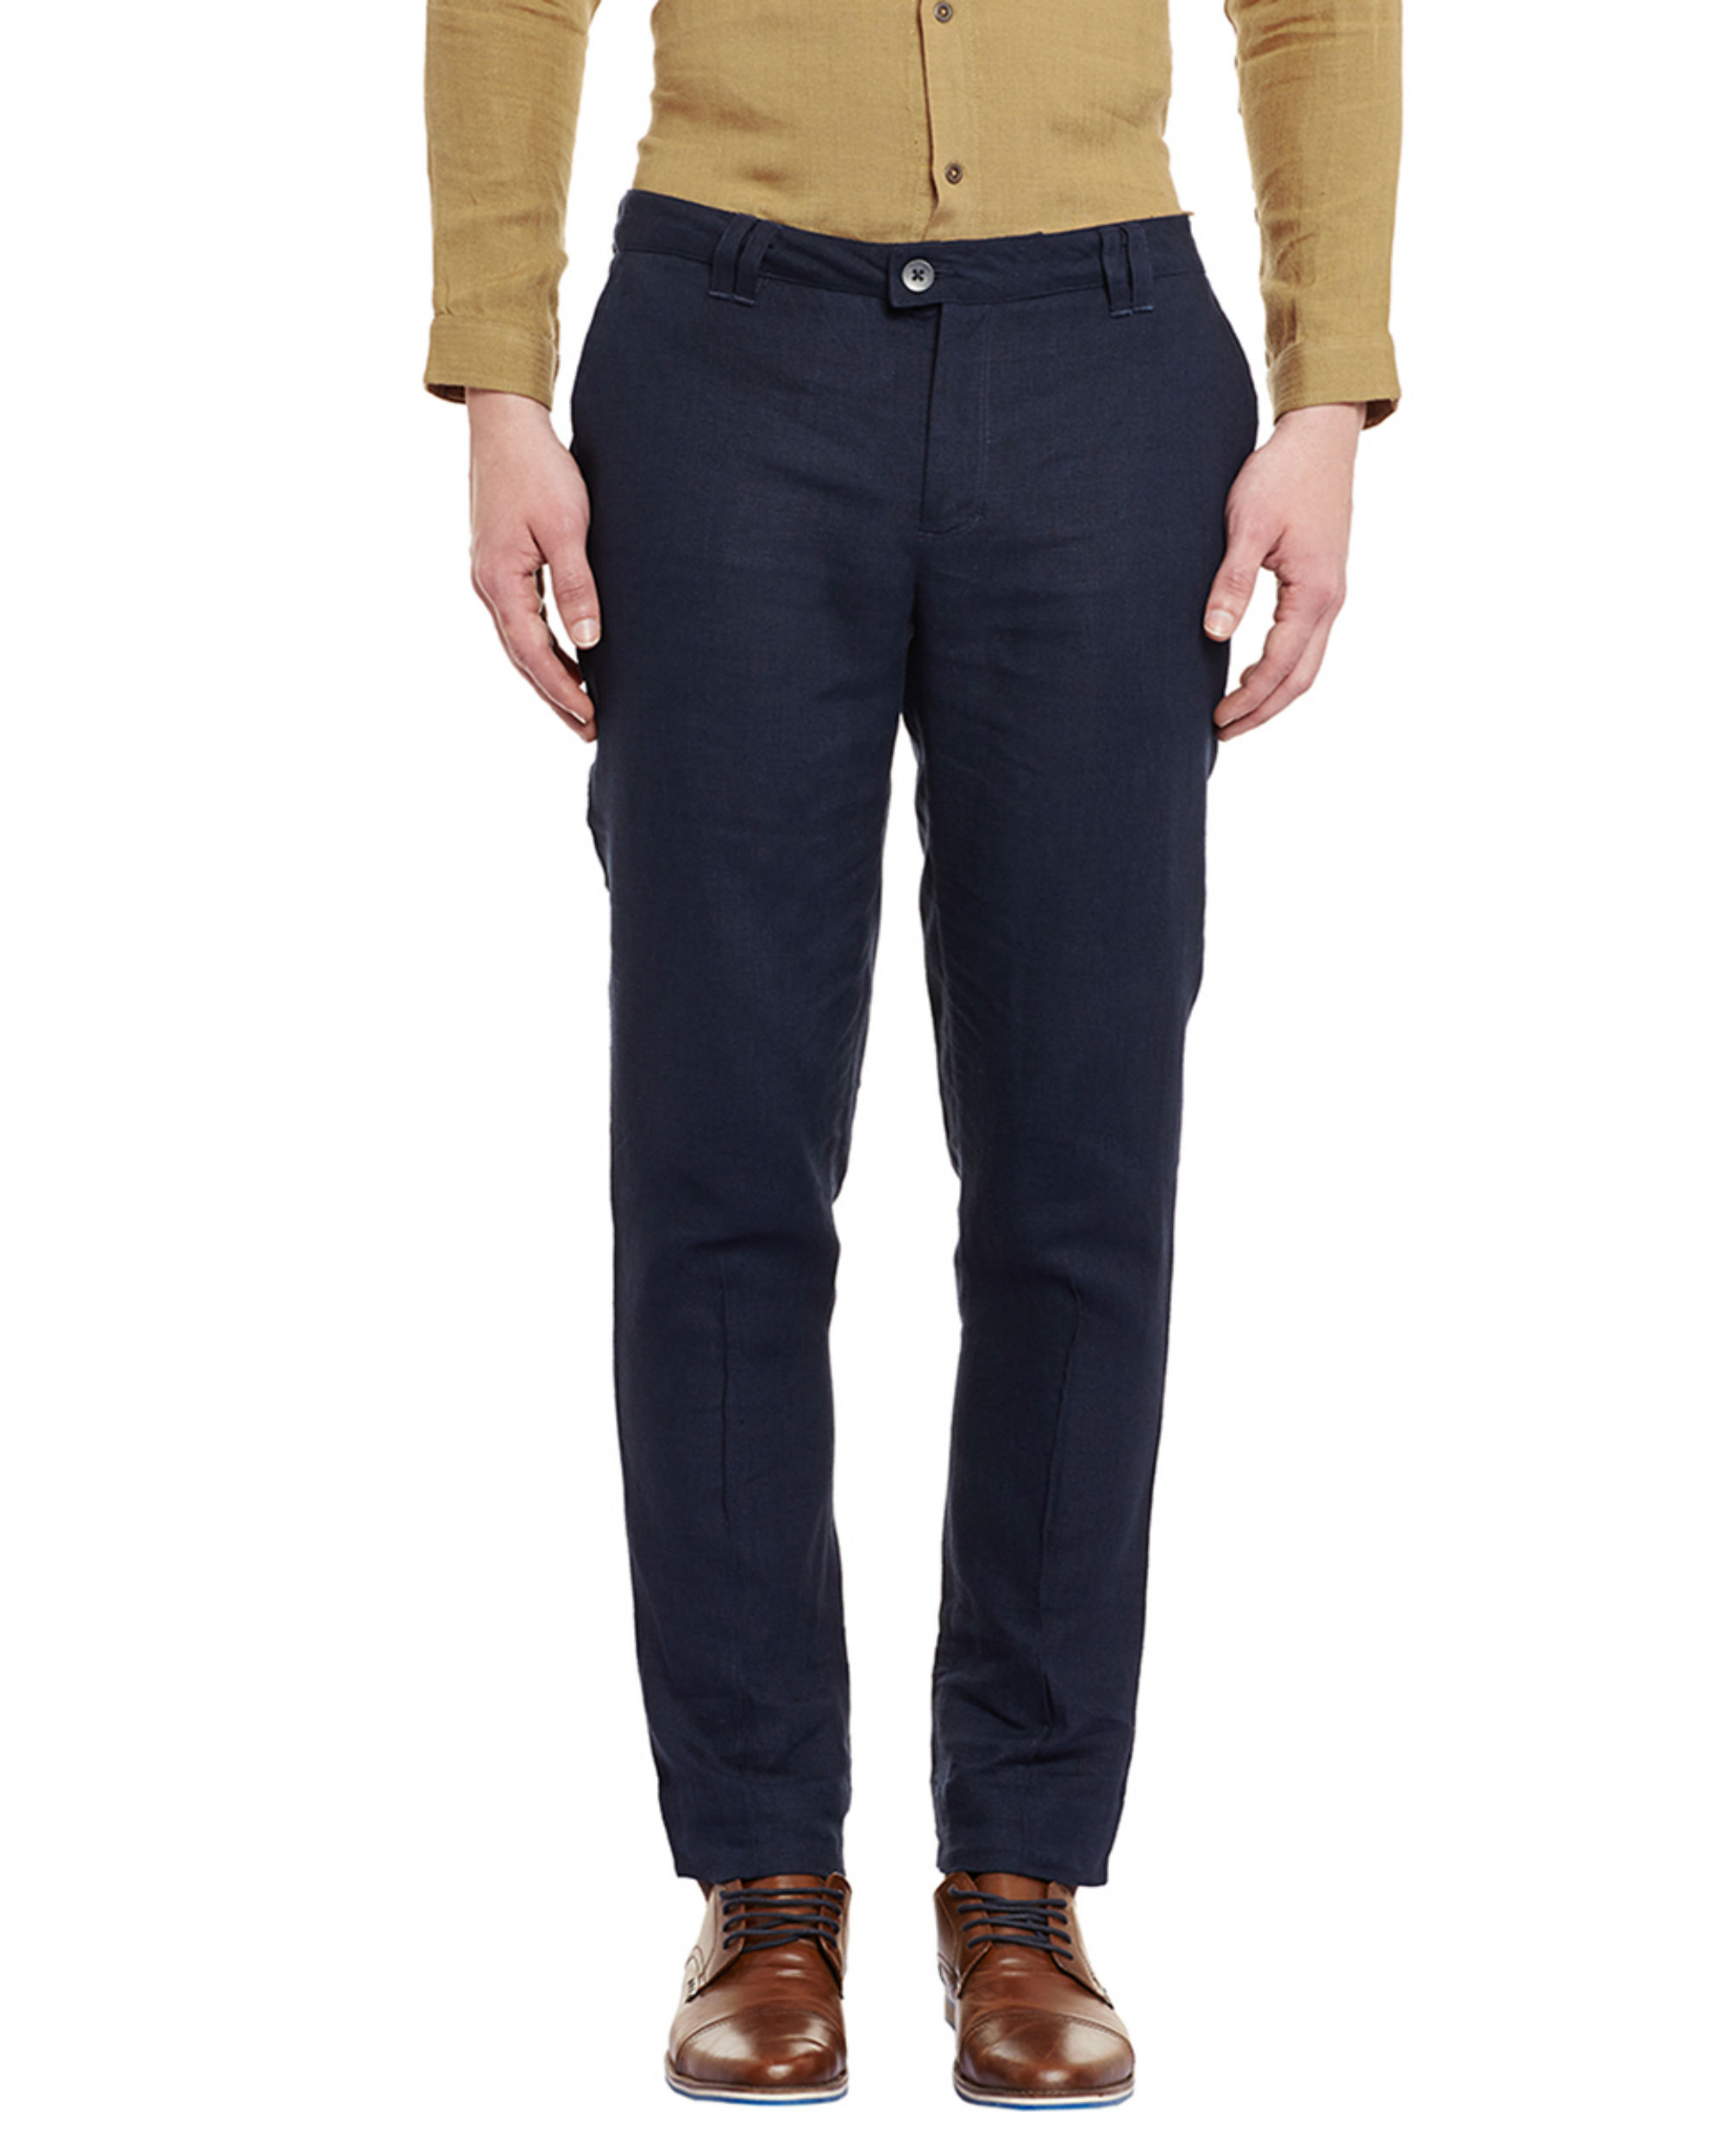 Navy blue linen trousers by Dhatu Design Studio | The Secret Label